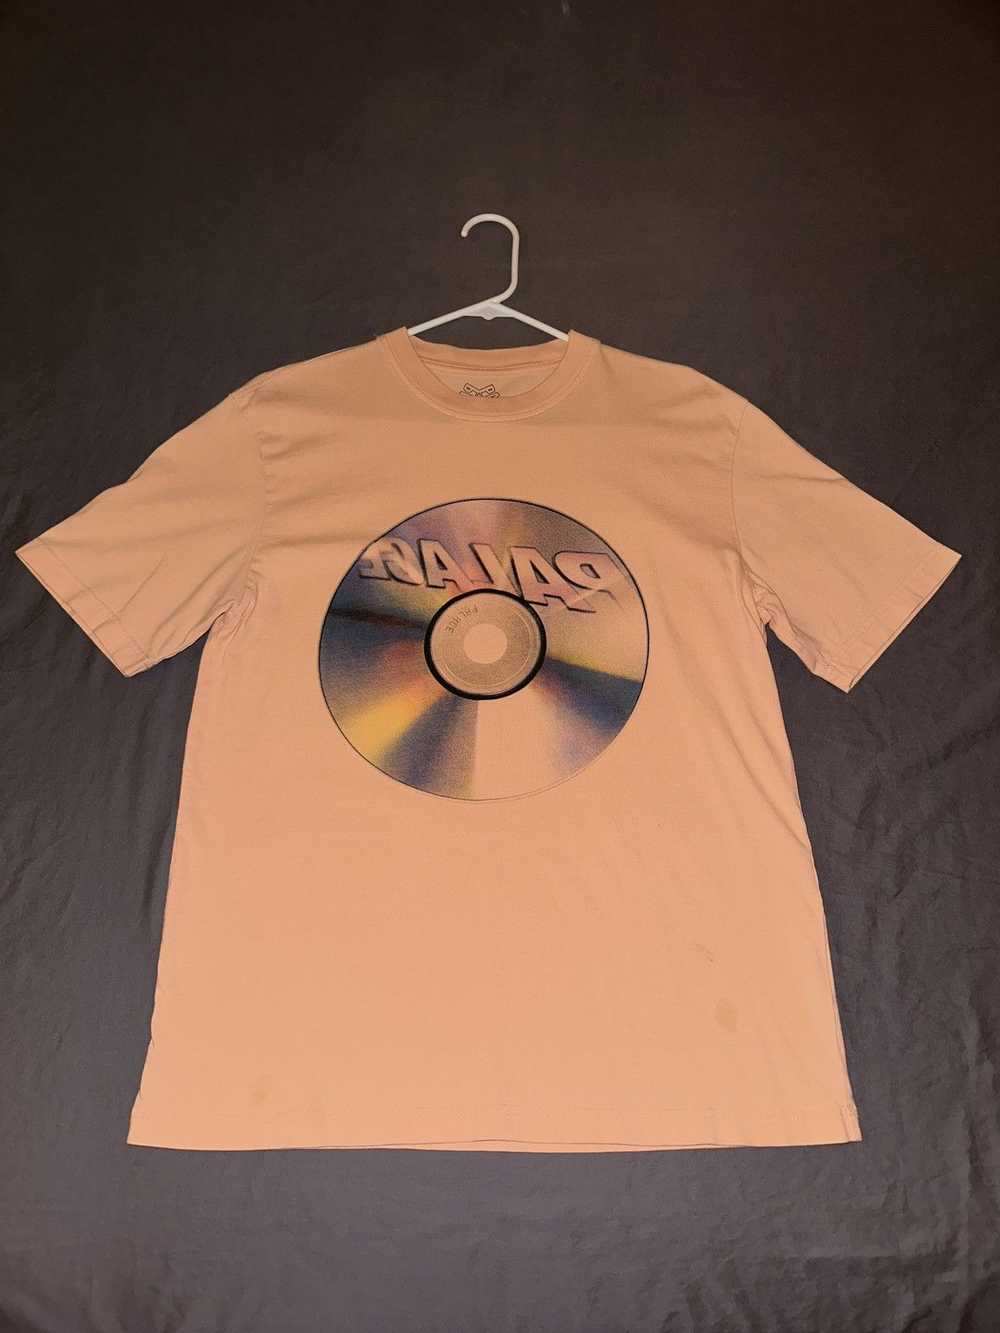 Palace PALACE CD T-Shirt Men’s Medium - image 2